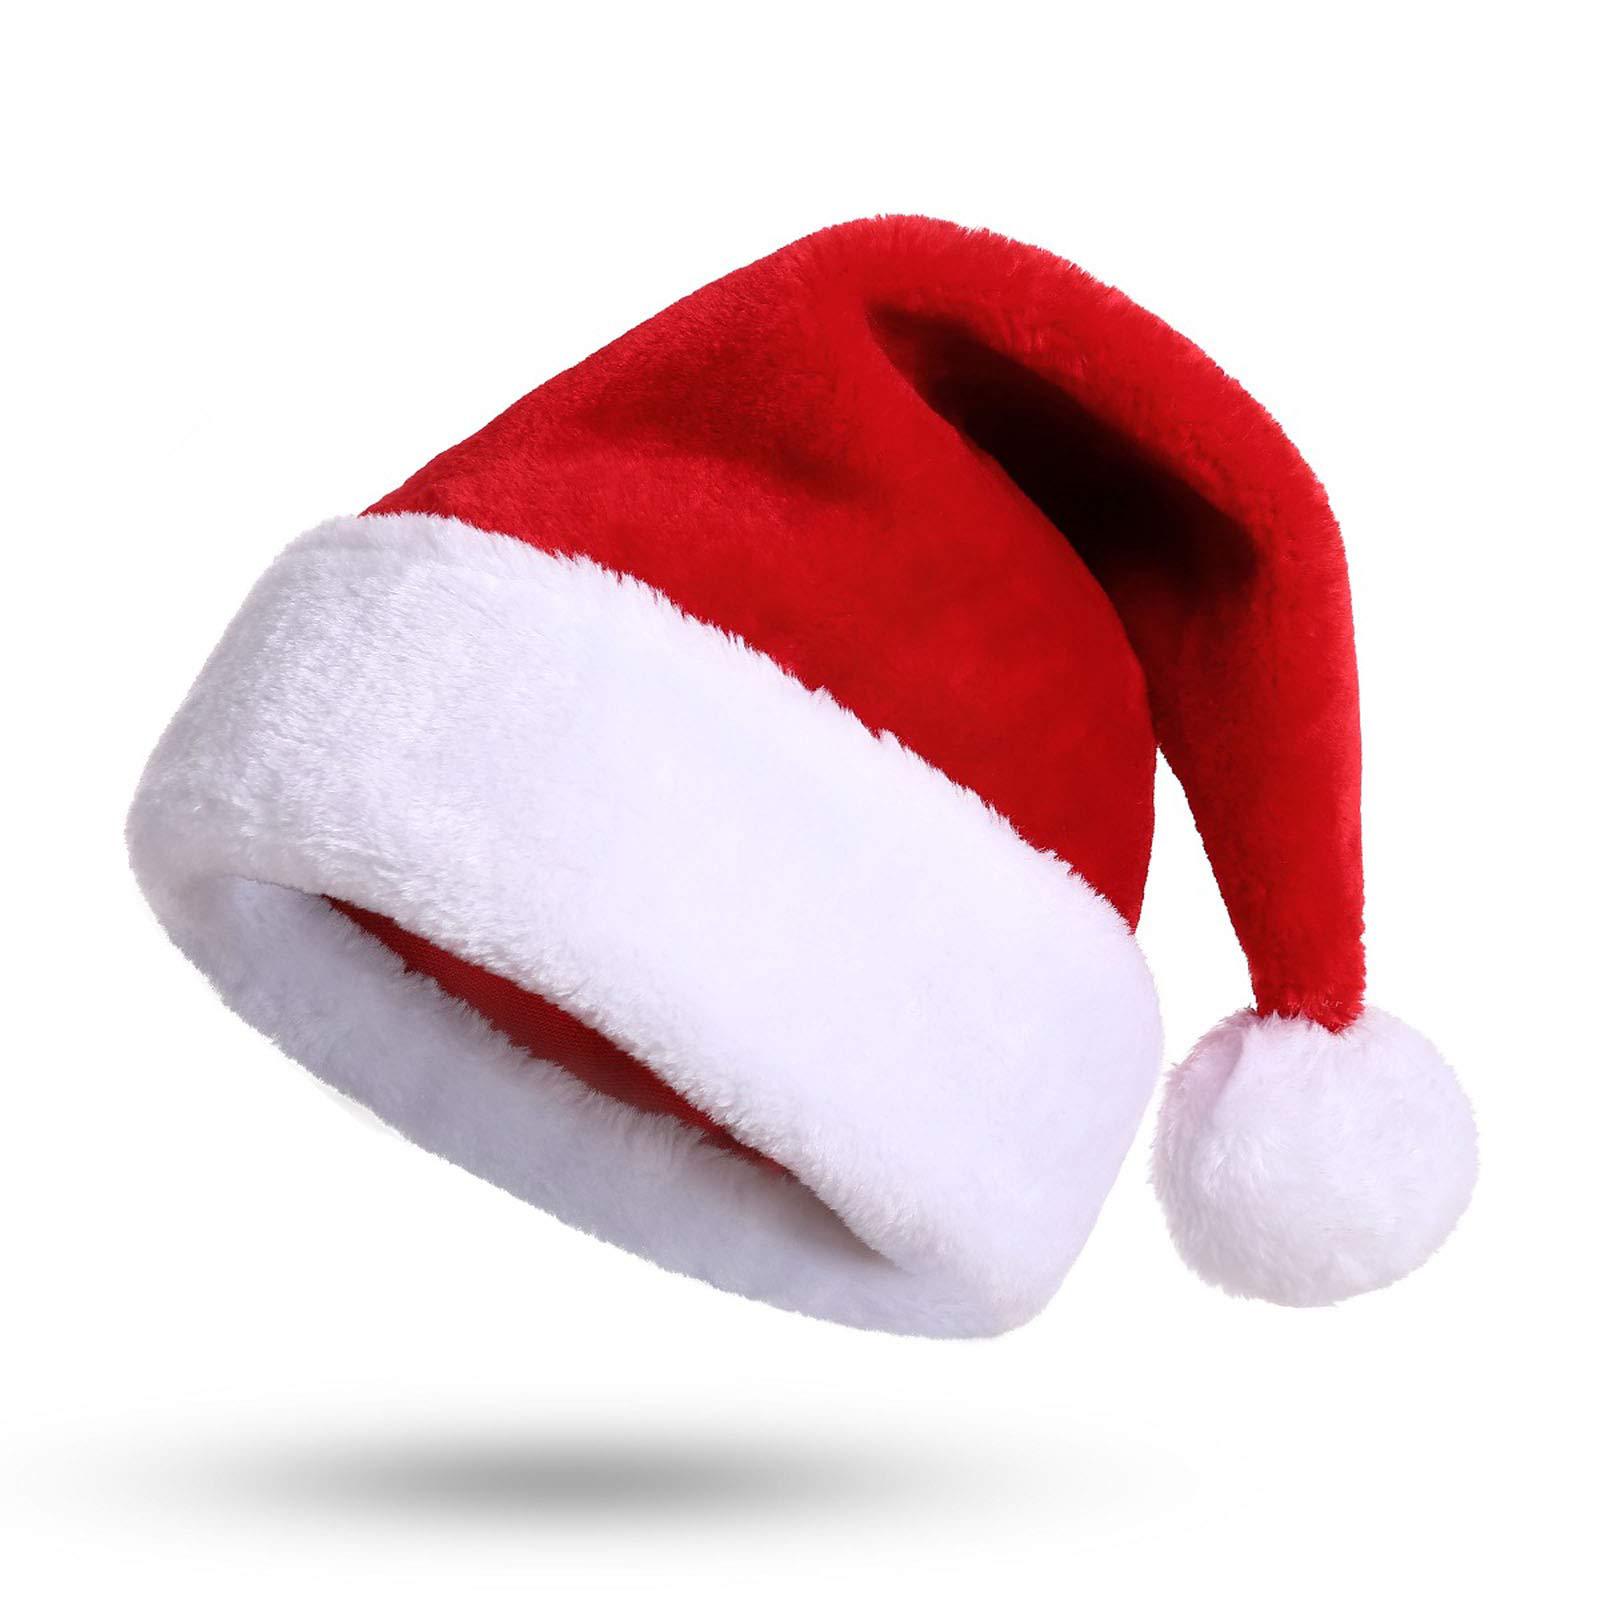 サンタ 帽子 子供 成人 クリスマス 男の子 女の子 フリース クリスマス 衣装 サンタコス 着ぐるみ 記念撮影 イベント サンタクロース